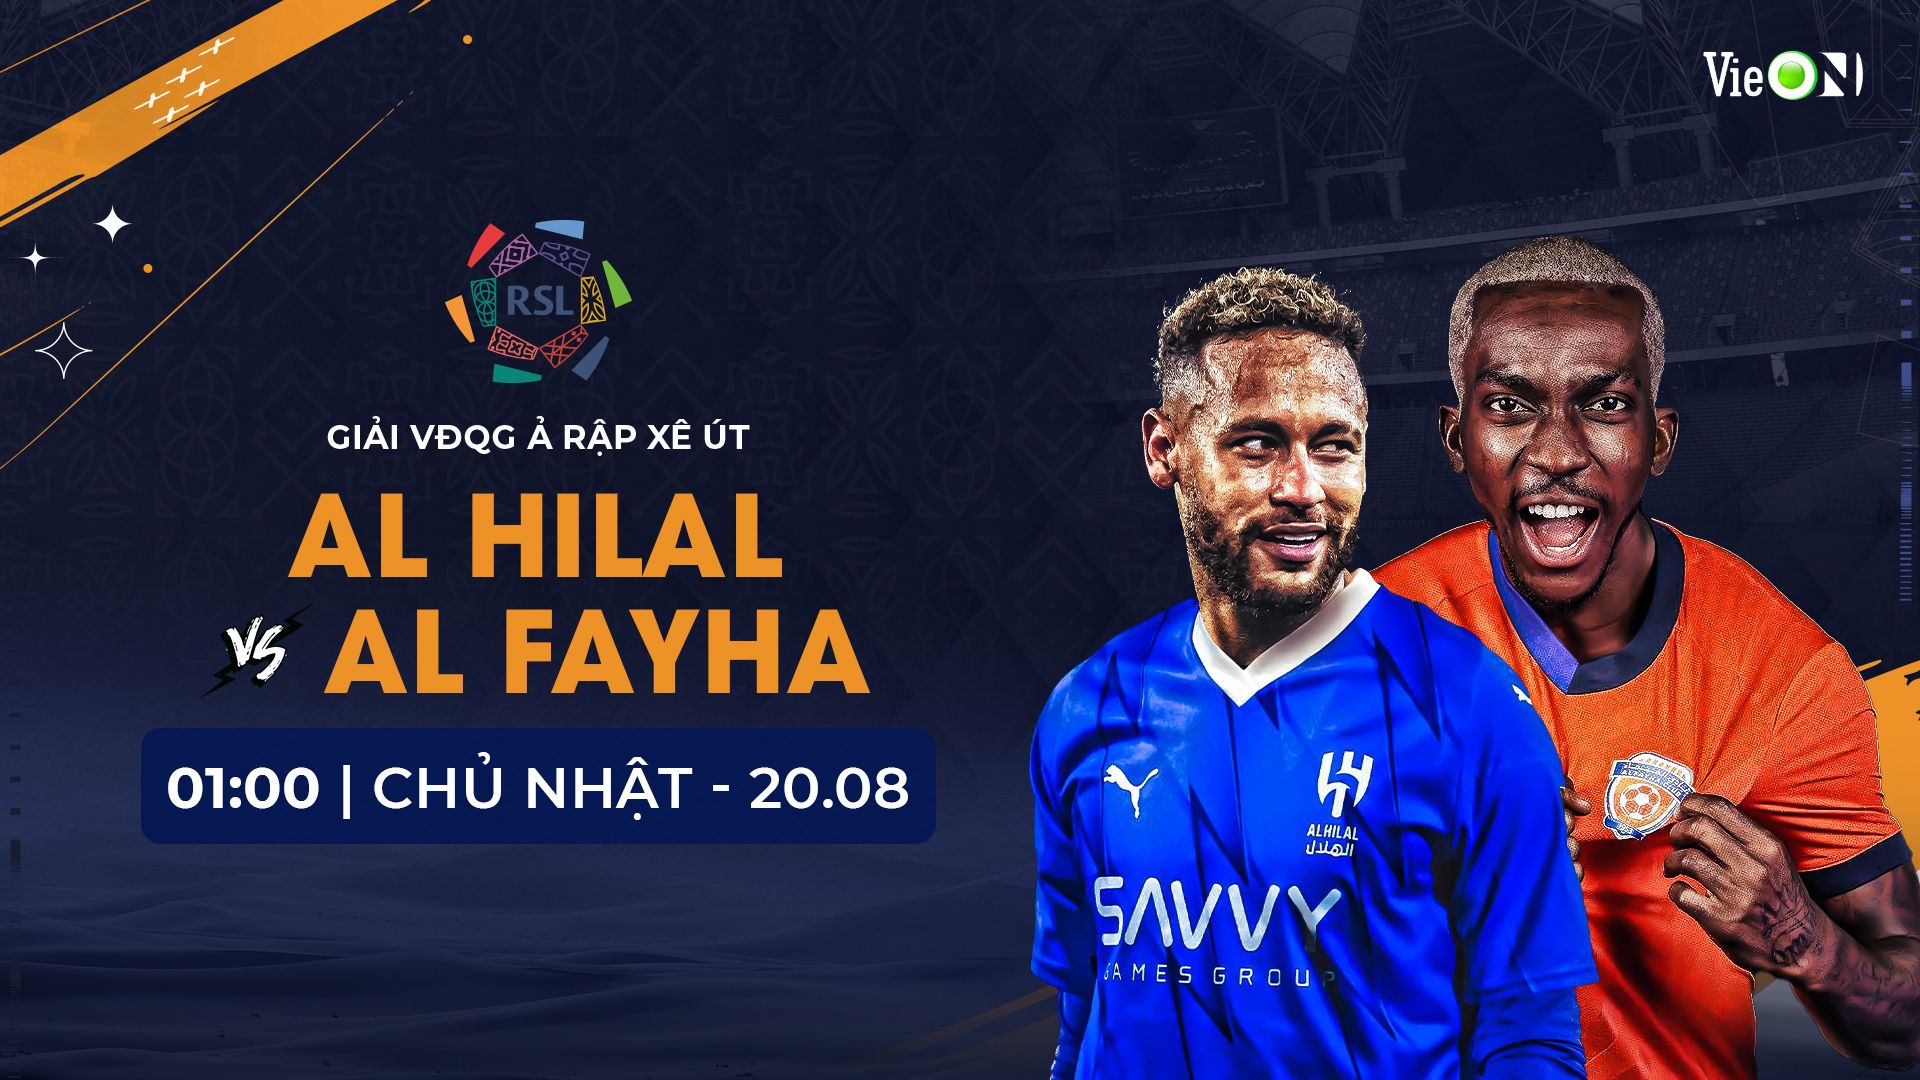 Lịch thi đấu trận đầu tiên của Neymar cho Al Hilal. Ảnh: VieOn